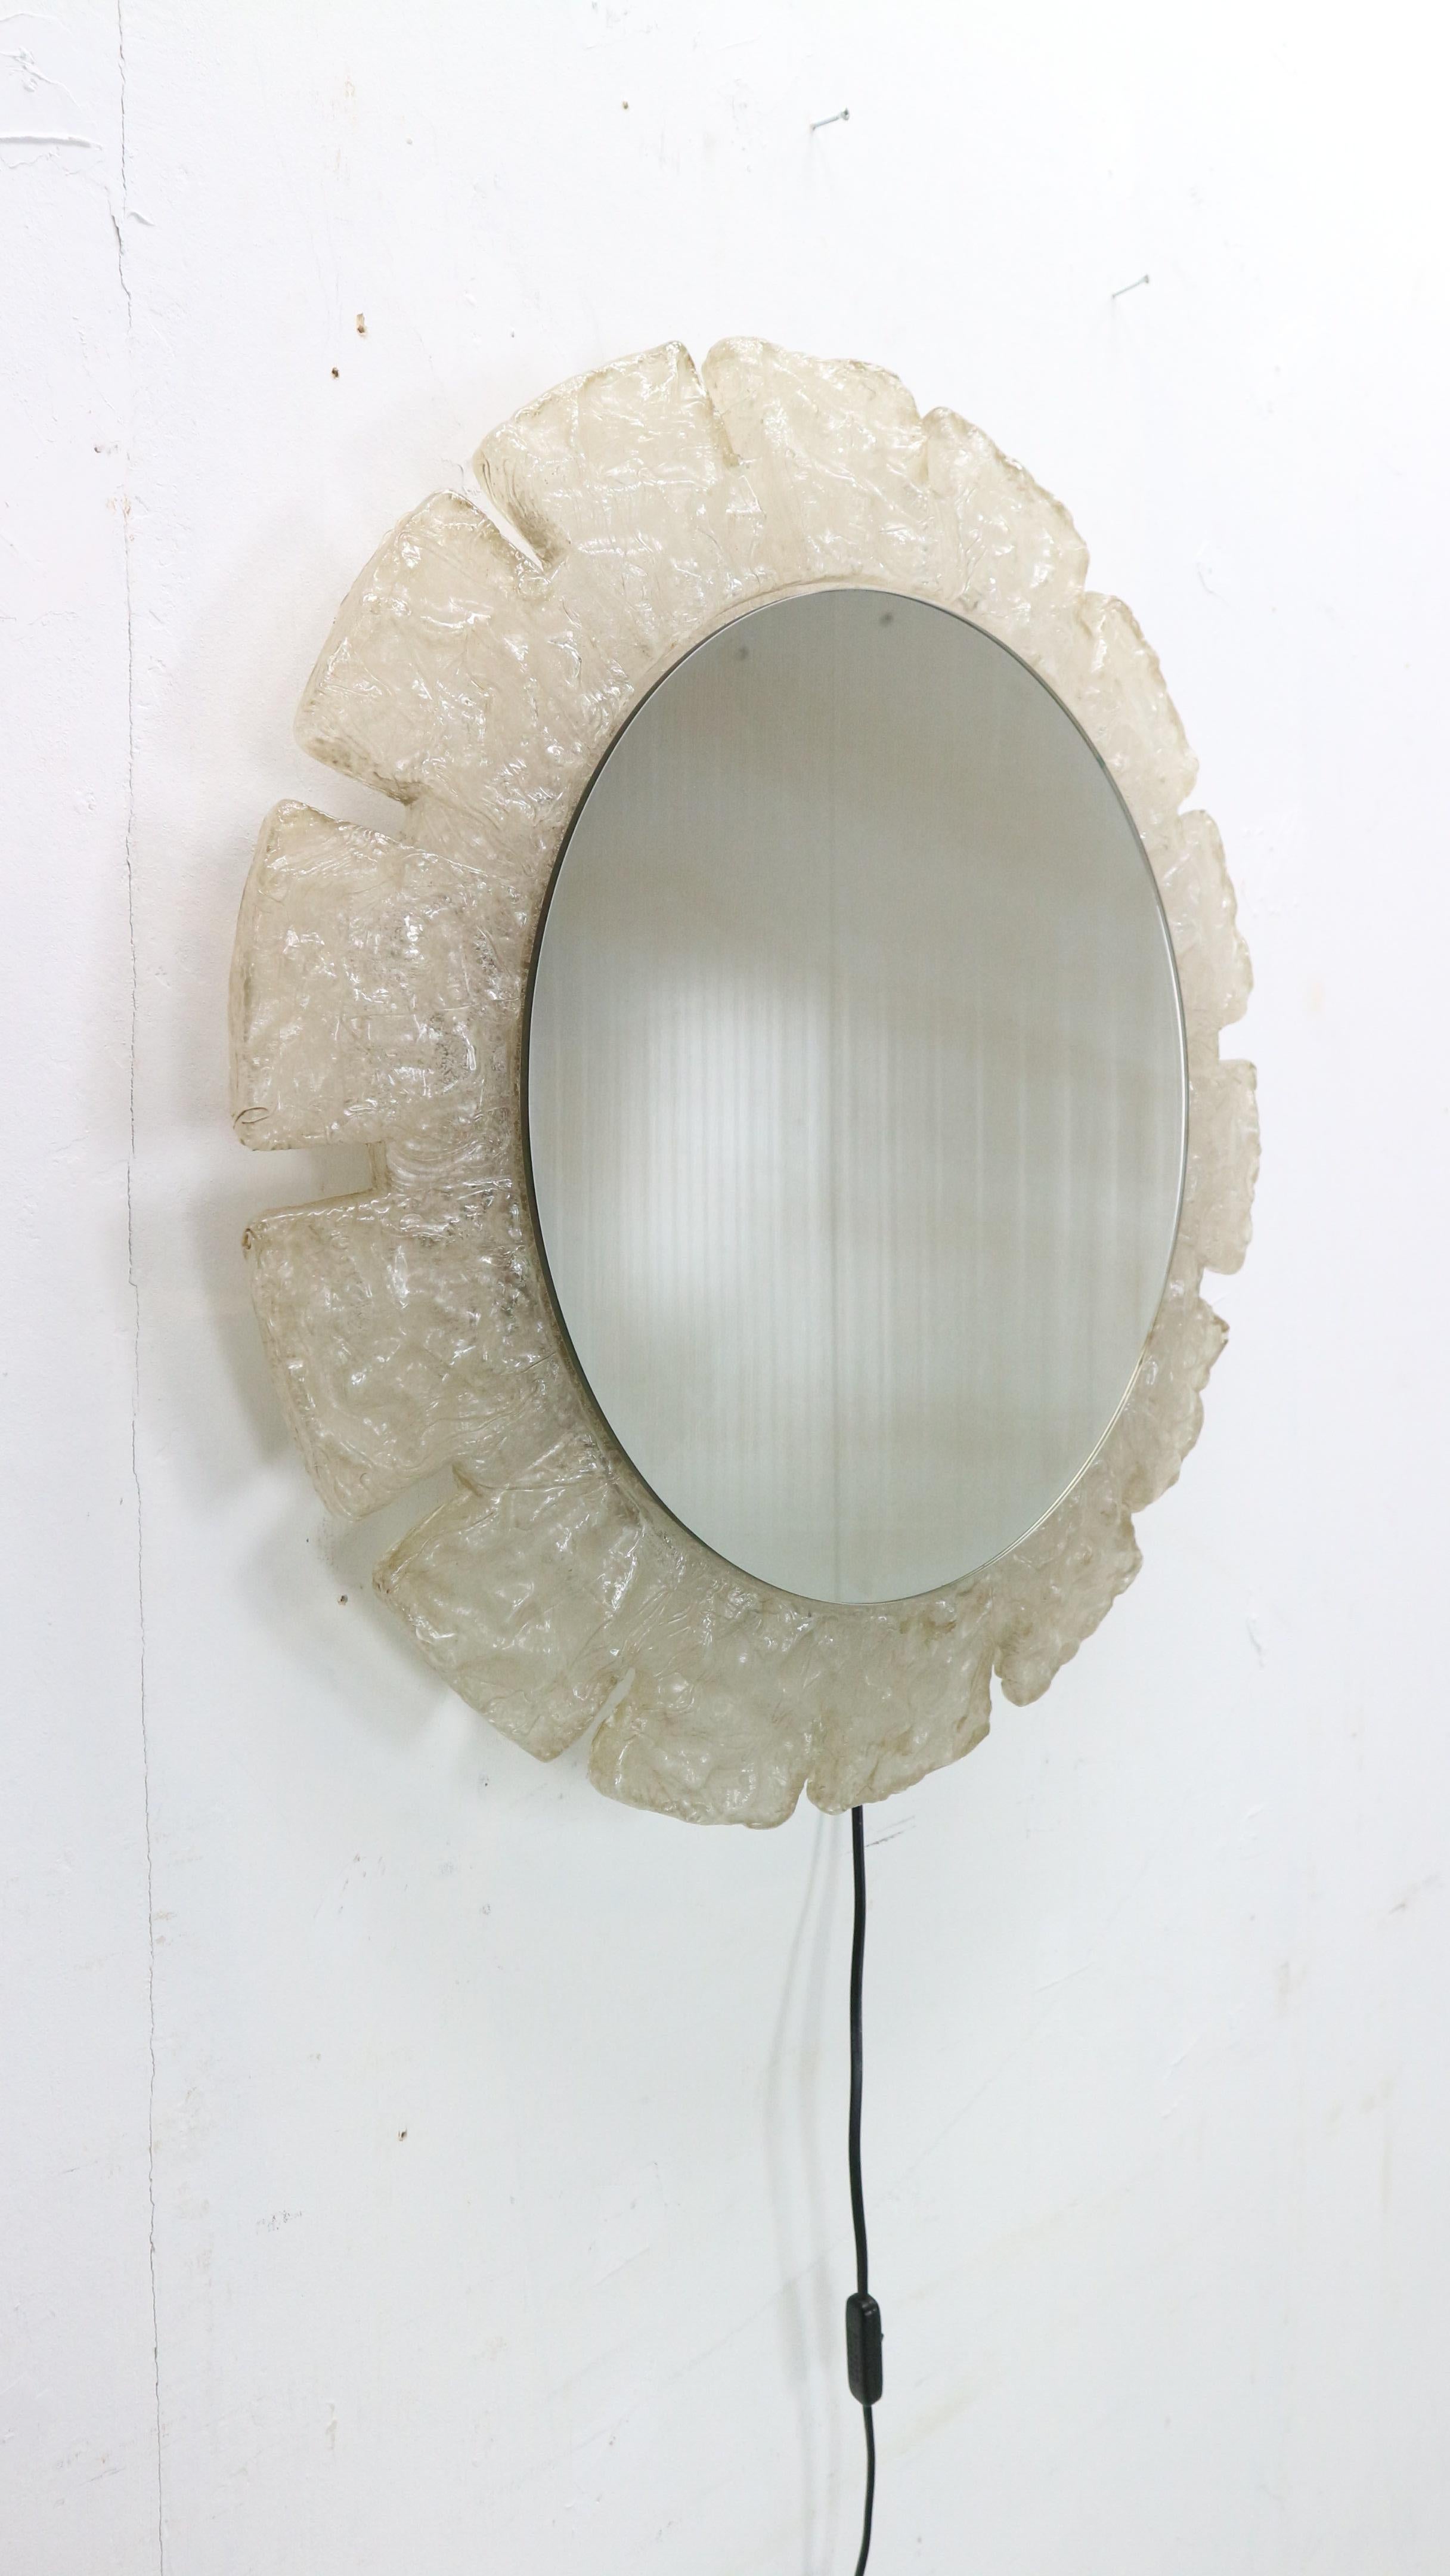 Der runde Spiegel wurde von Egon Hillebrand entworfen, 1960er Jahre, Deutschland.
Er besteht aus Metall mit Plexiglas um den Spiegel selbst. Drei Innenbeleuchtungen, die ein warmes, weiches Licht ausstrahlen, wenn sie eingeschaltet sind. 
Der